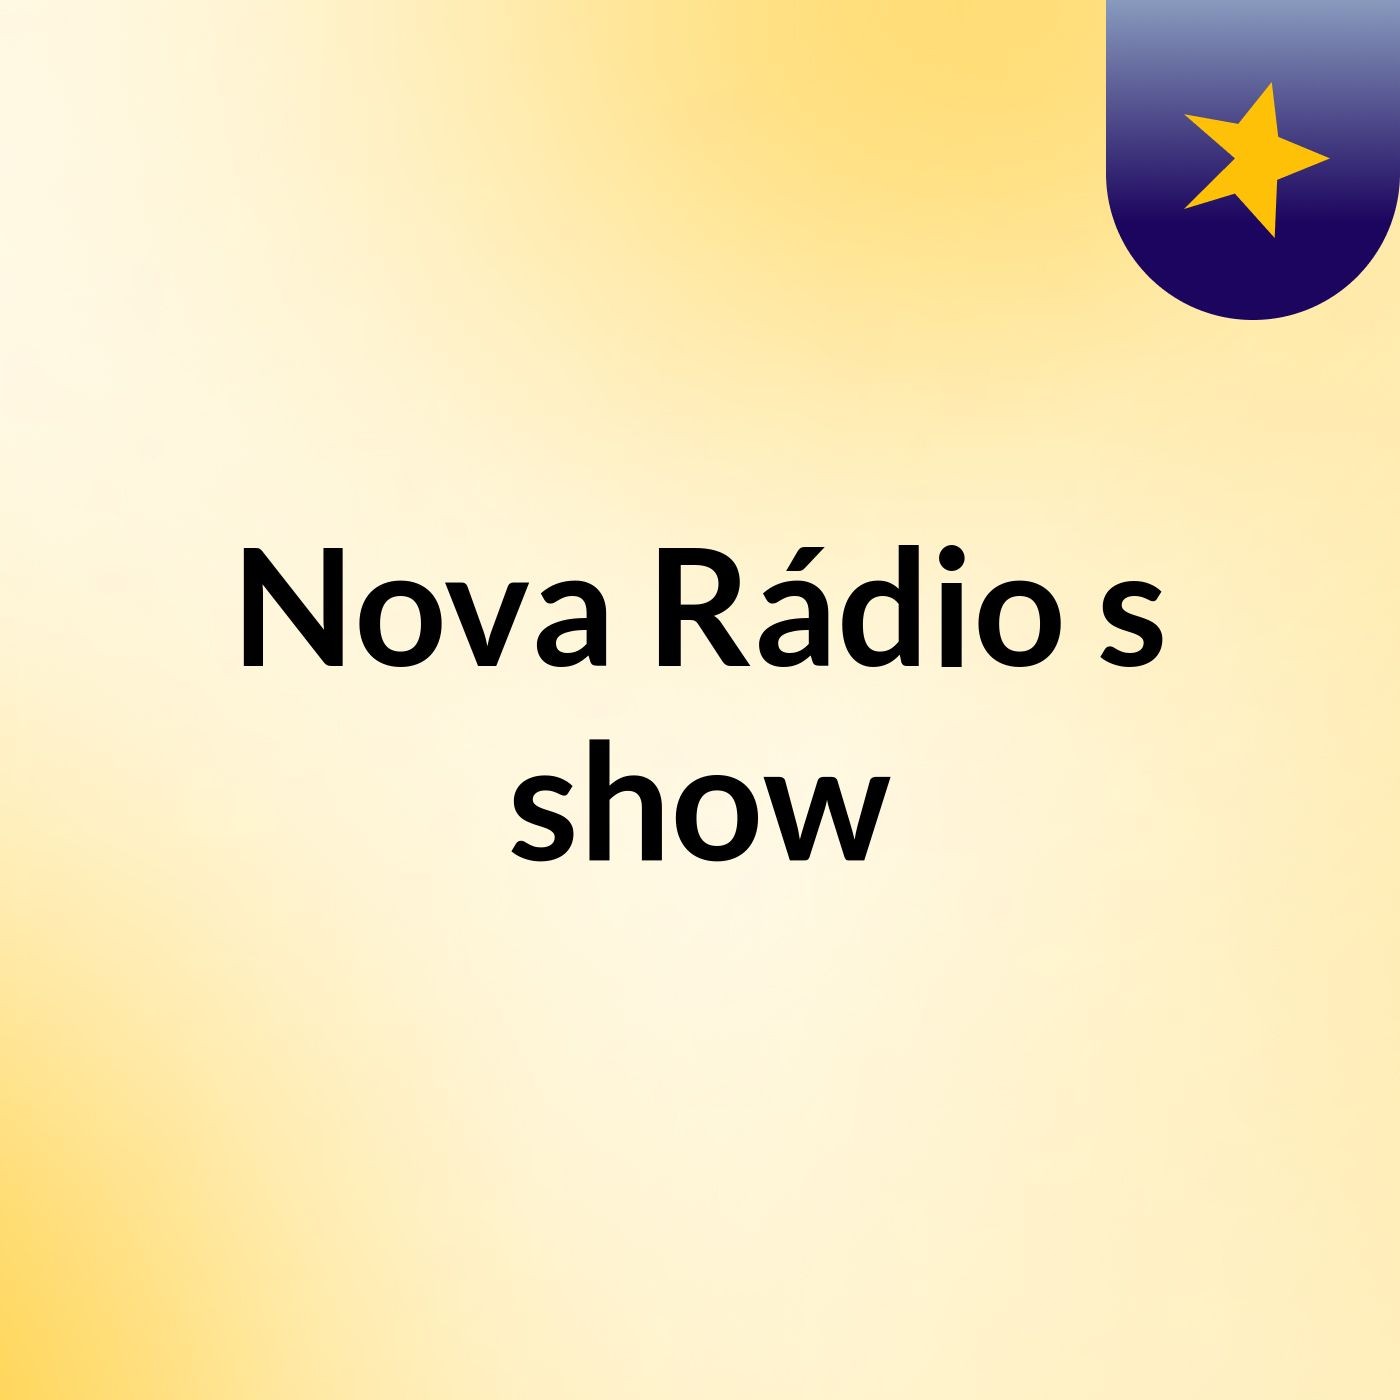 Nova Rádio's show